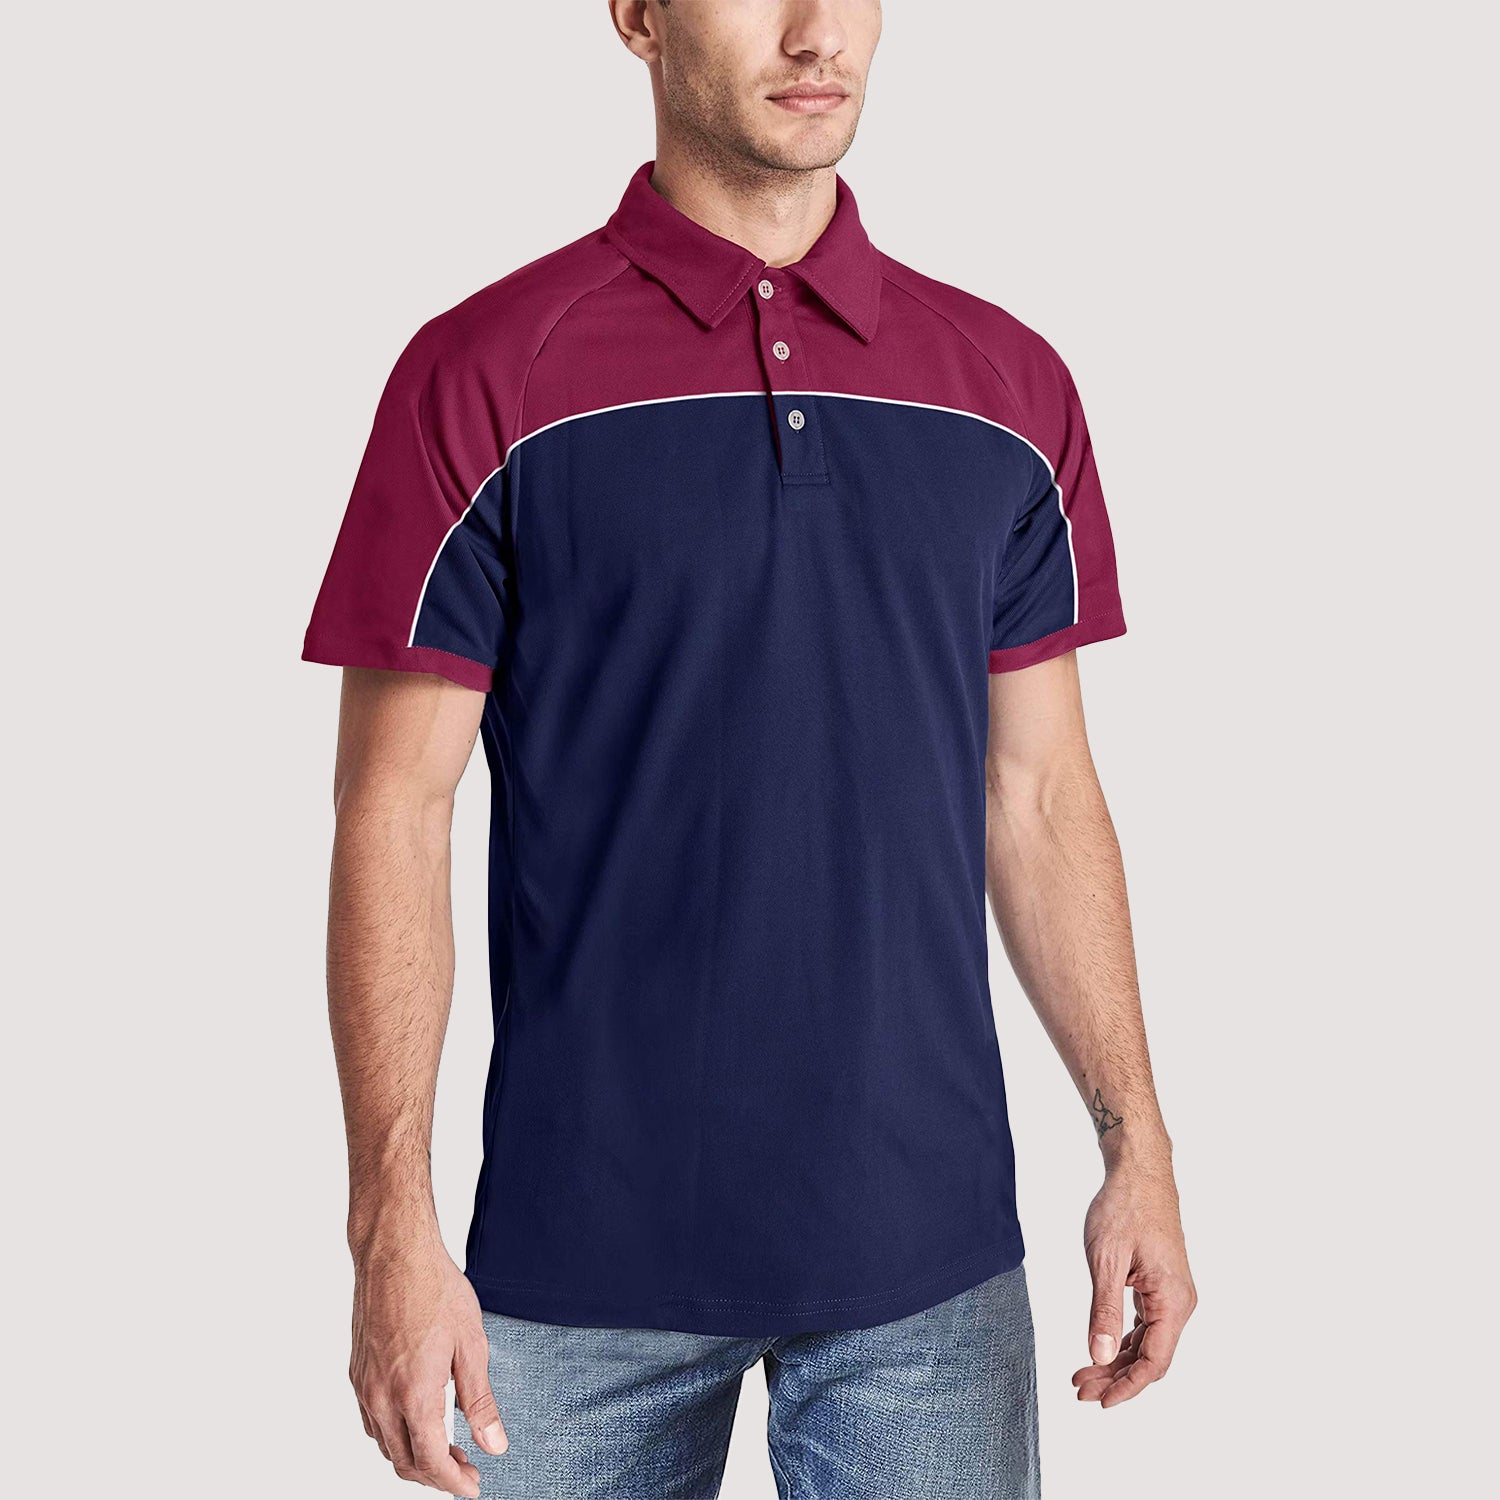 Men's Outdoor Clothing, Men's Outdoor Golf Polo Shirts